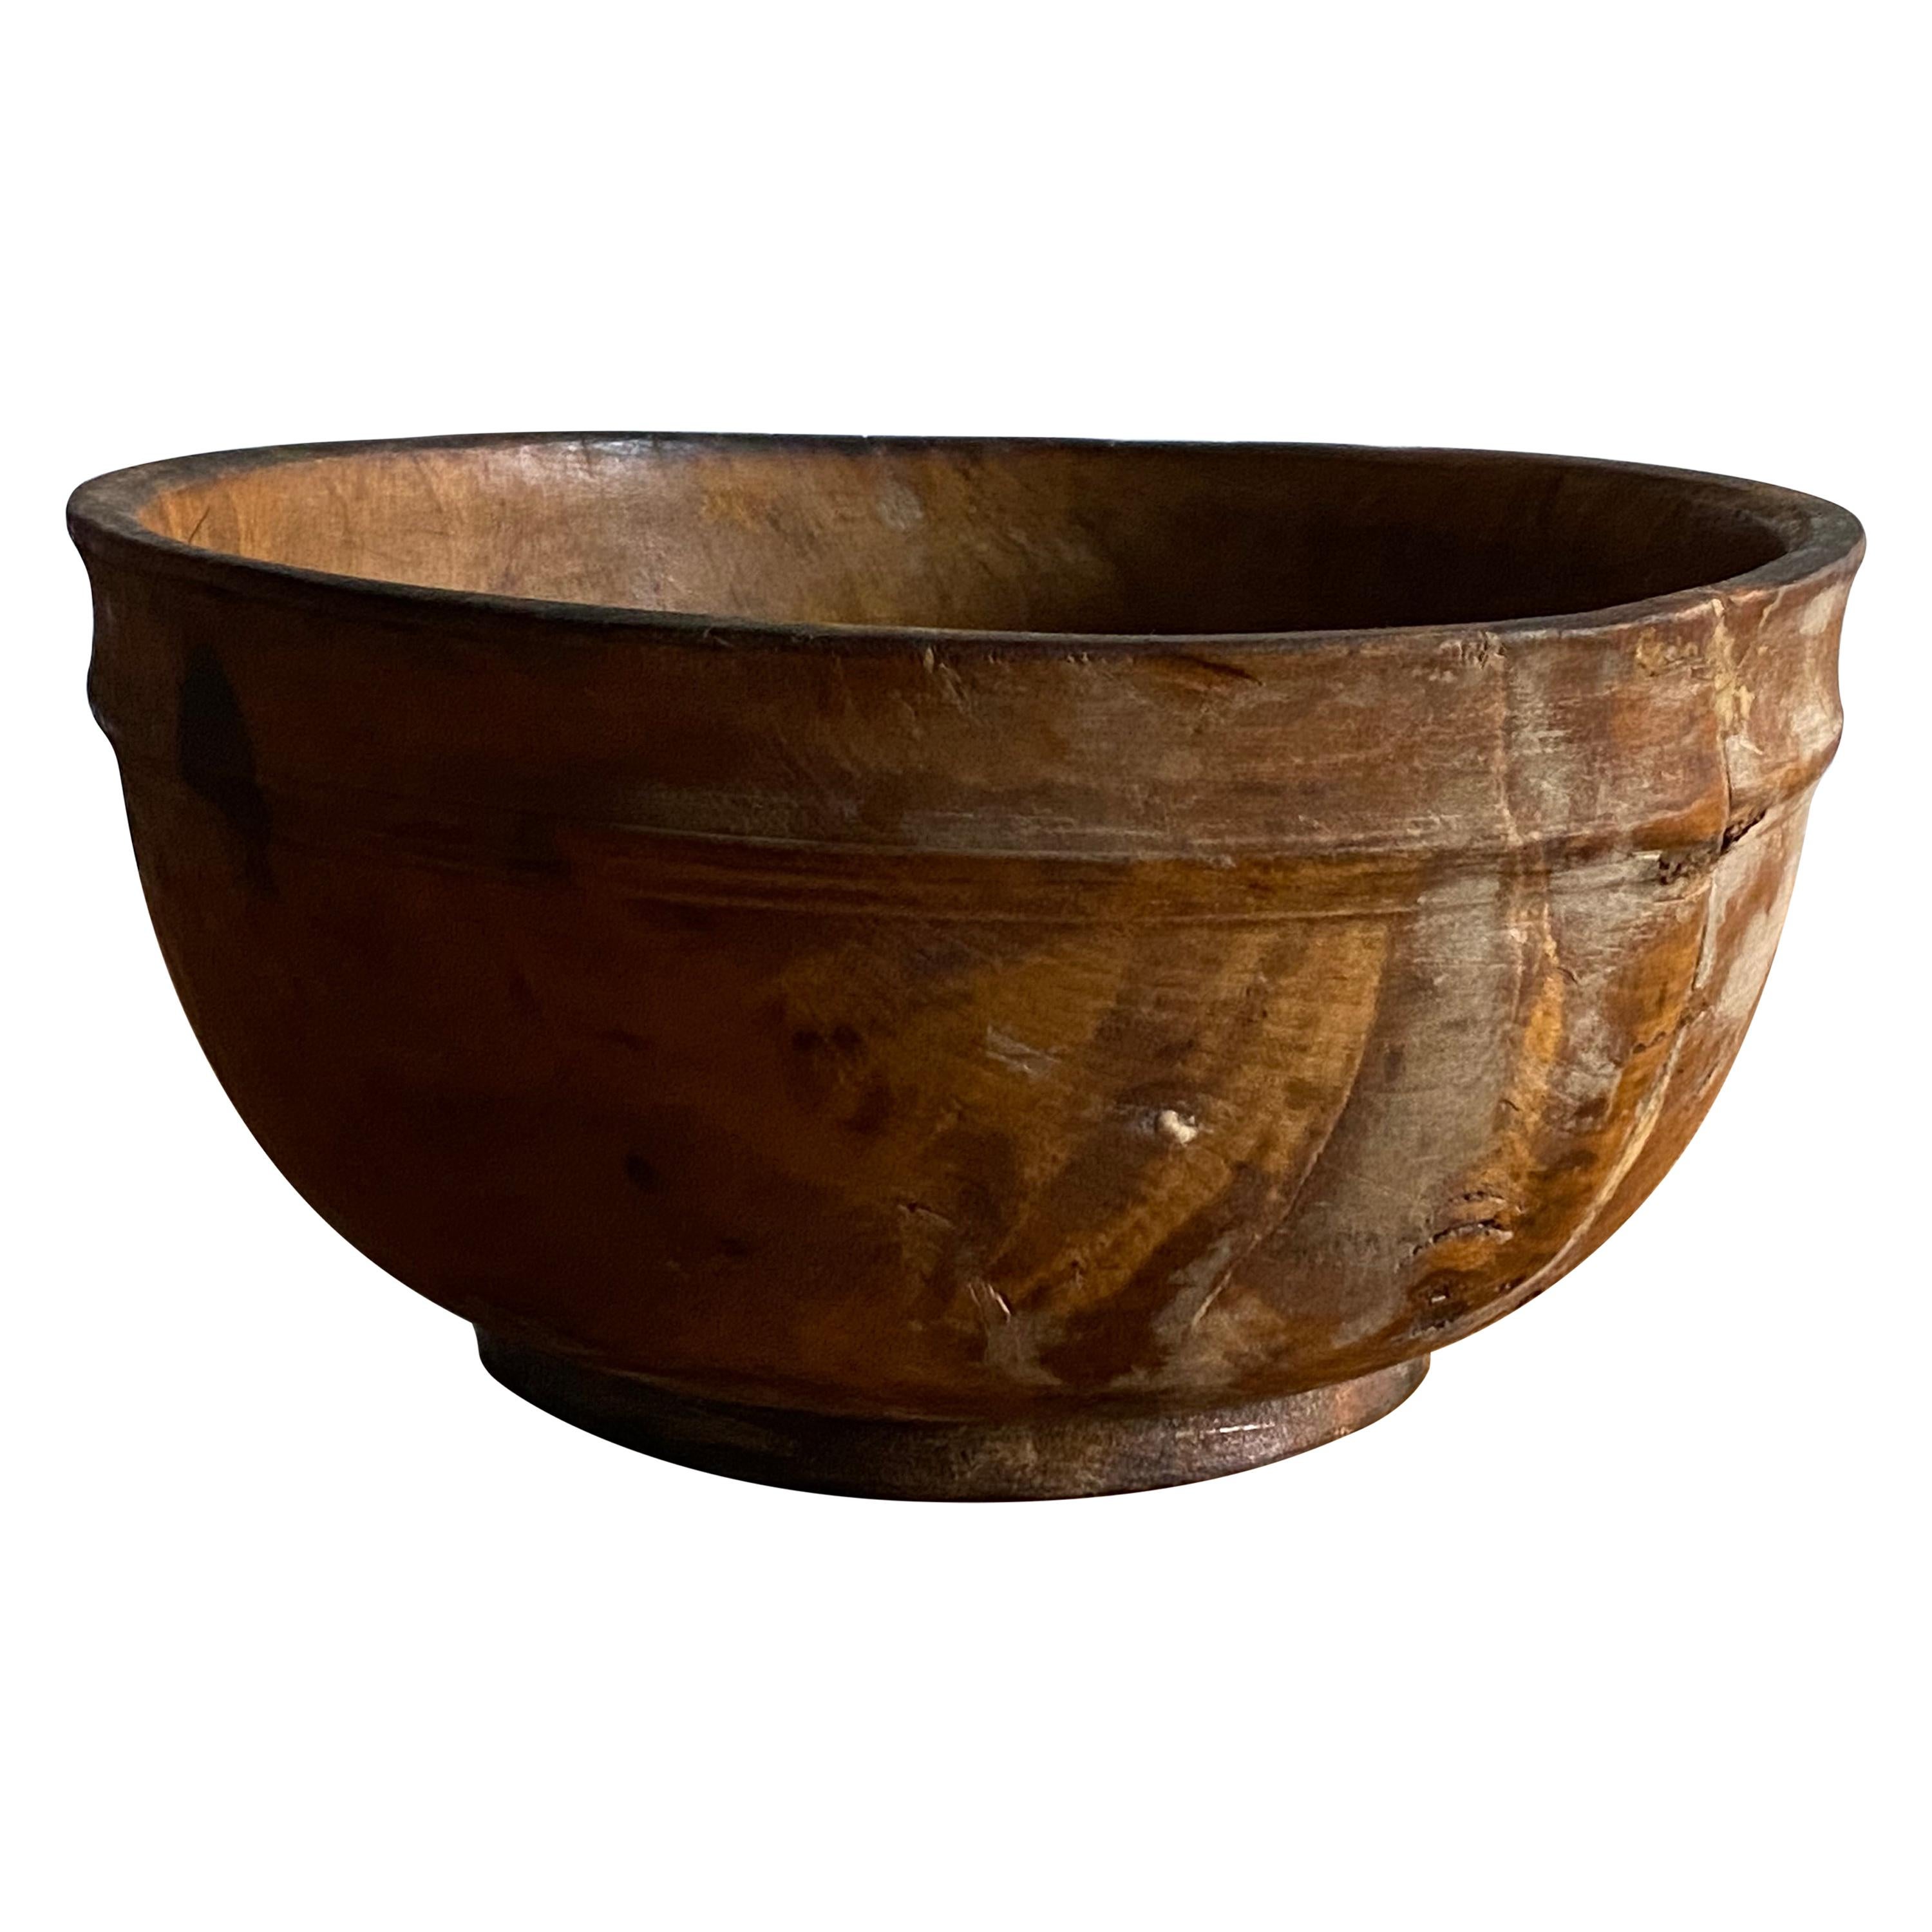 Swedish Folk Art, Unique Organic 19th Century Farmers Bowl, Wood